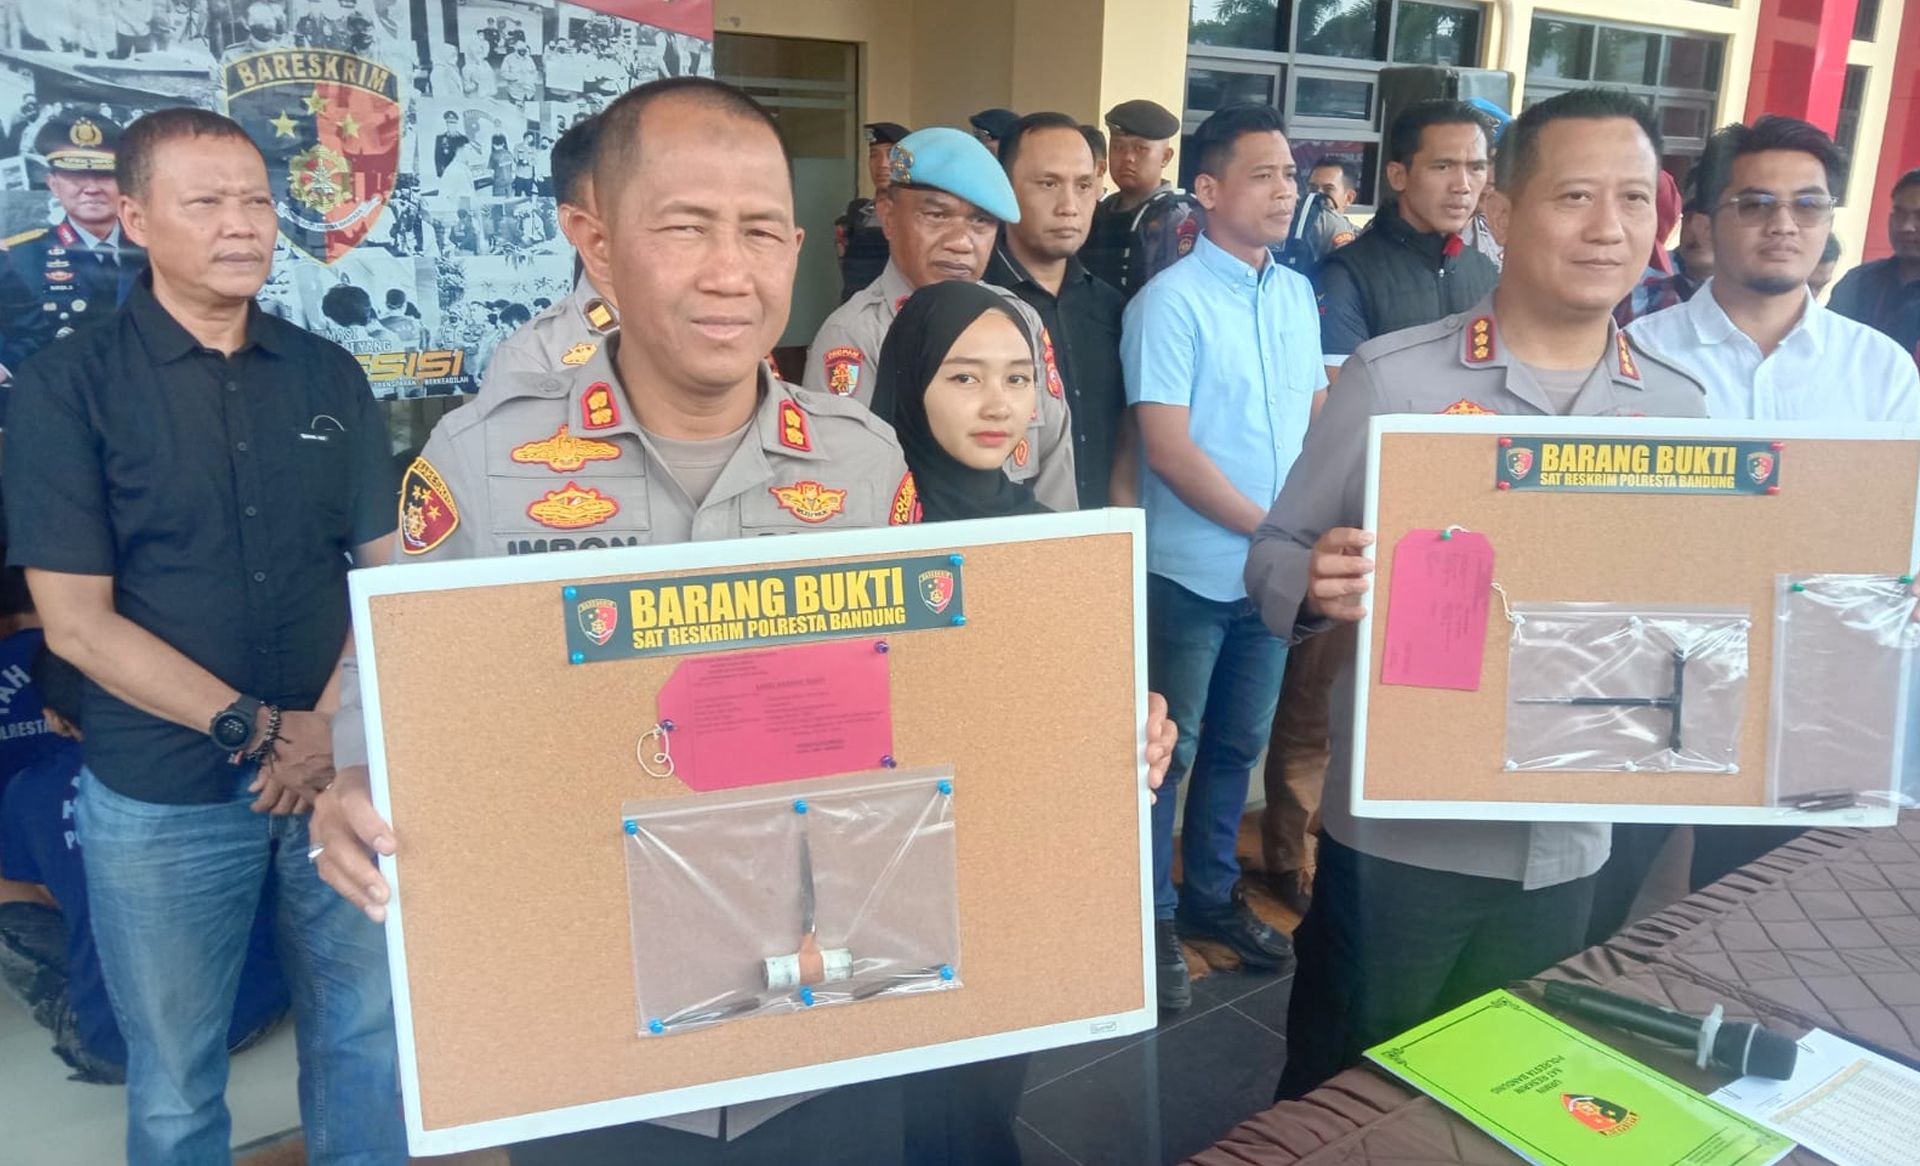 Ungkap kasus pencurian Motor dan Mobil oleh Polresta Bandung, Kamis 7 September